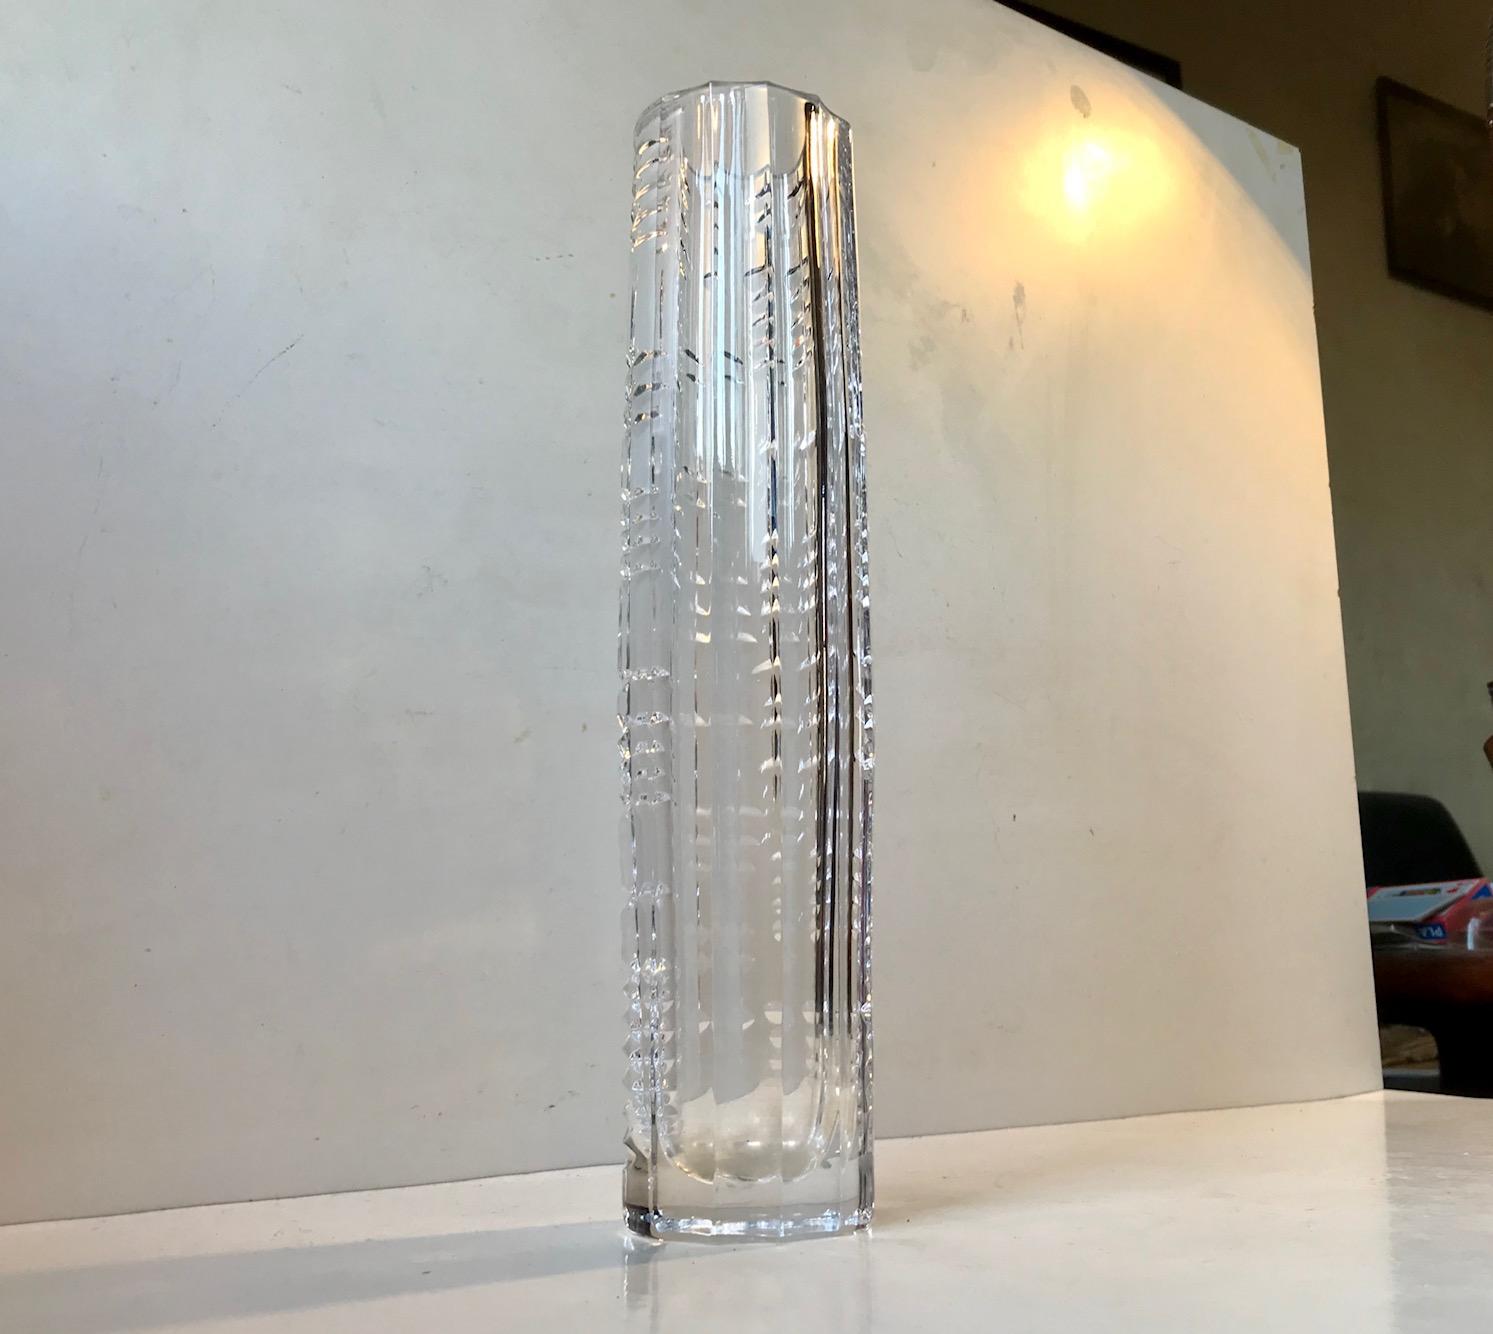 Un vase en cristal taillé en forme de torpille, probablement de Kosta Boda ou d'Orrefors. Le vase présente différentes techniques, la plus visible étant le mélange de nervures verticales d'un côté et d'un entrecroisement géométrique de motifs en